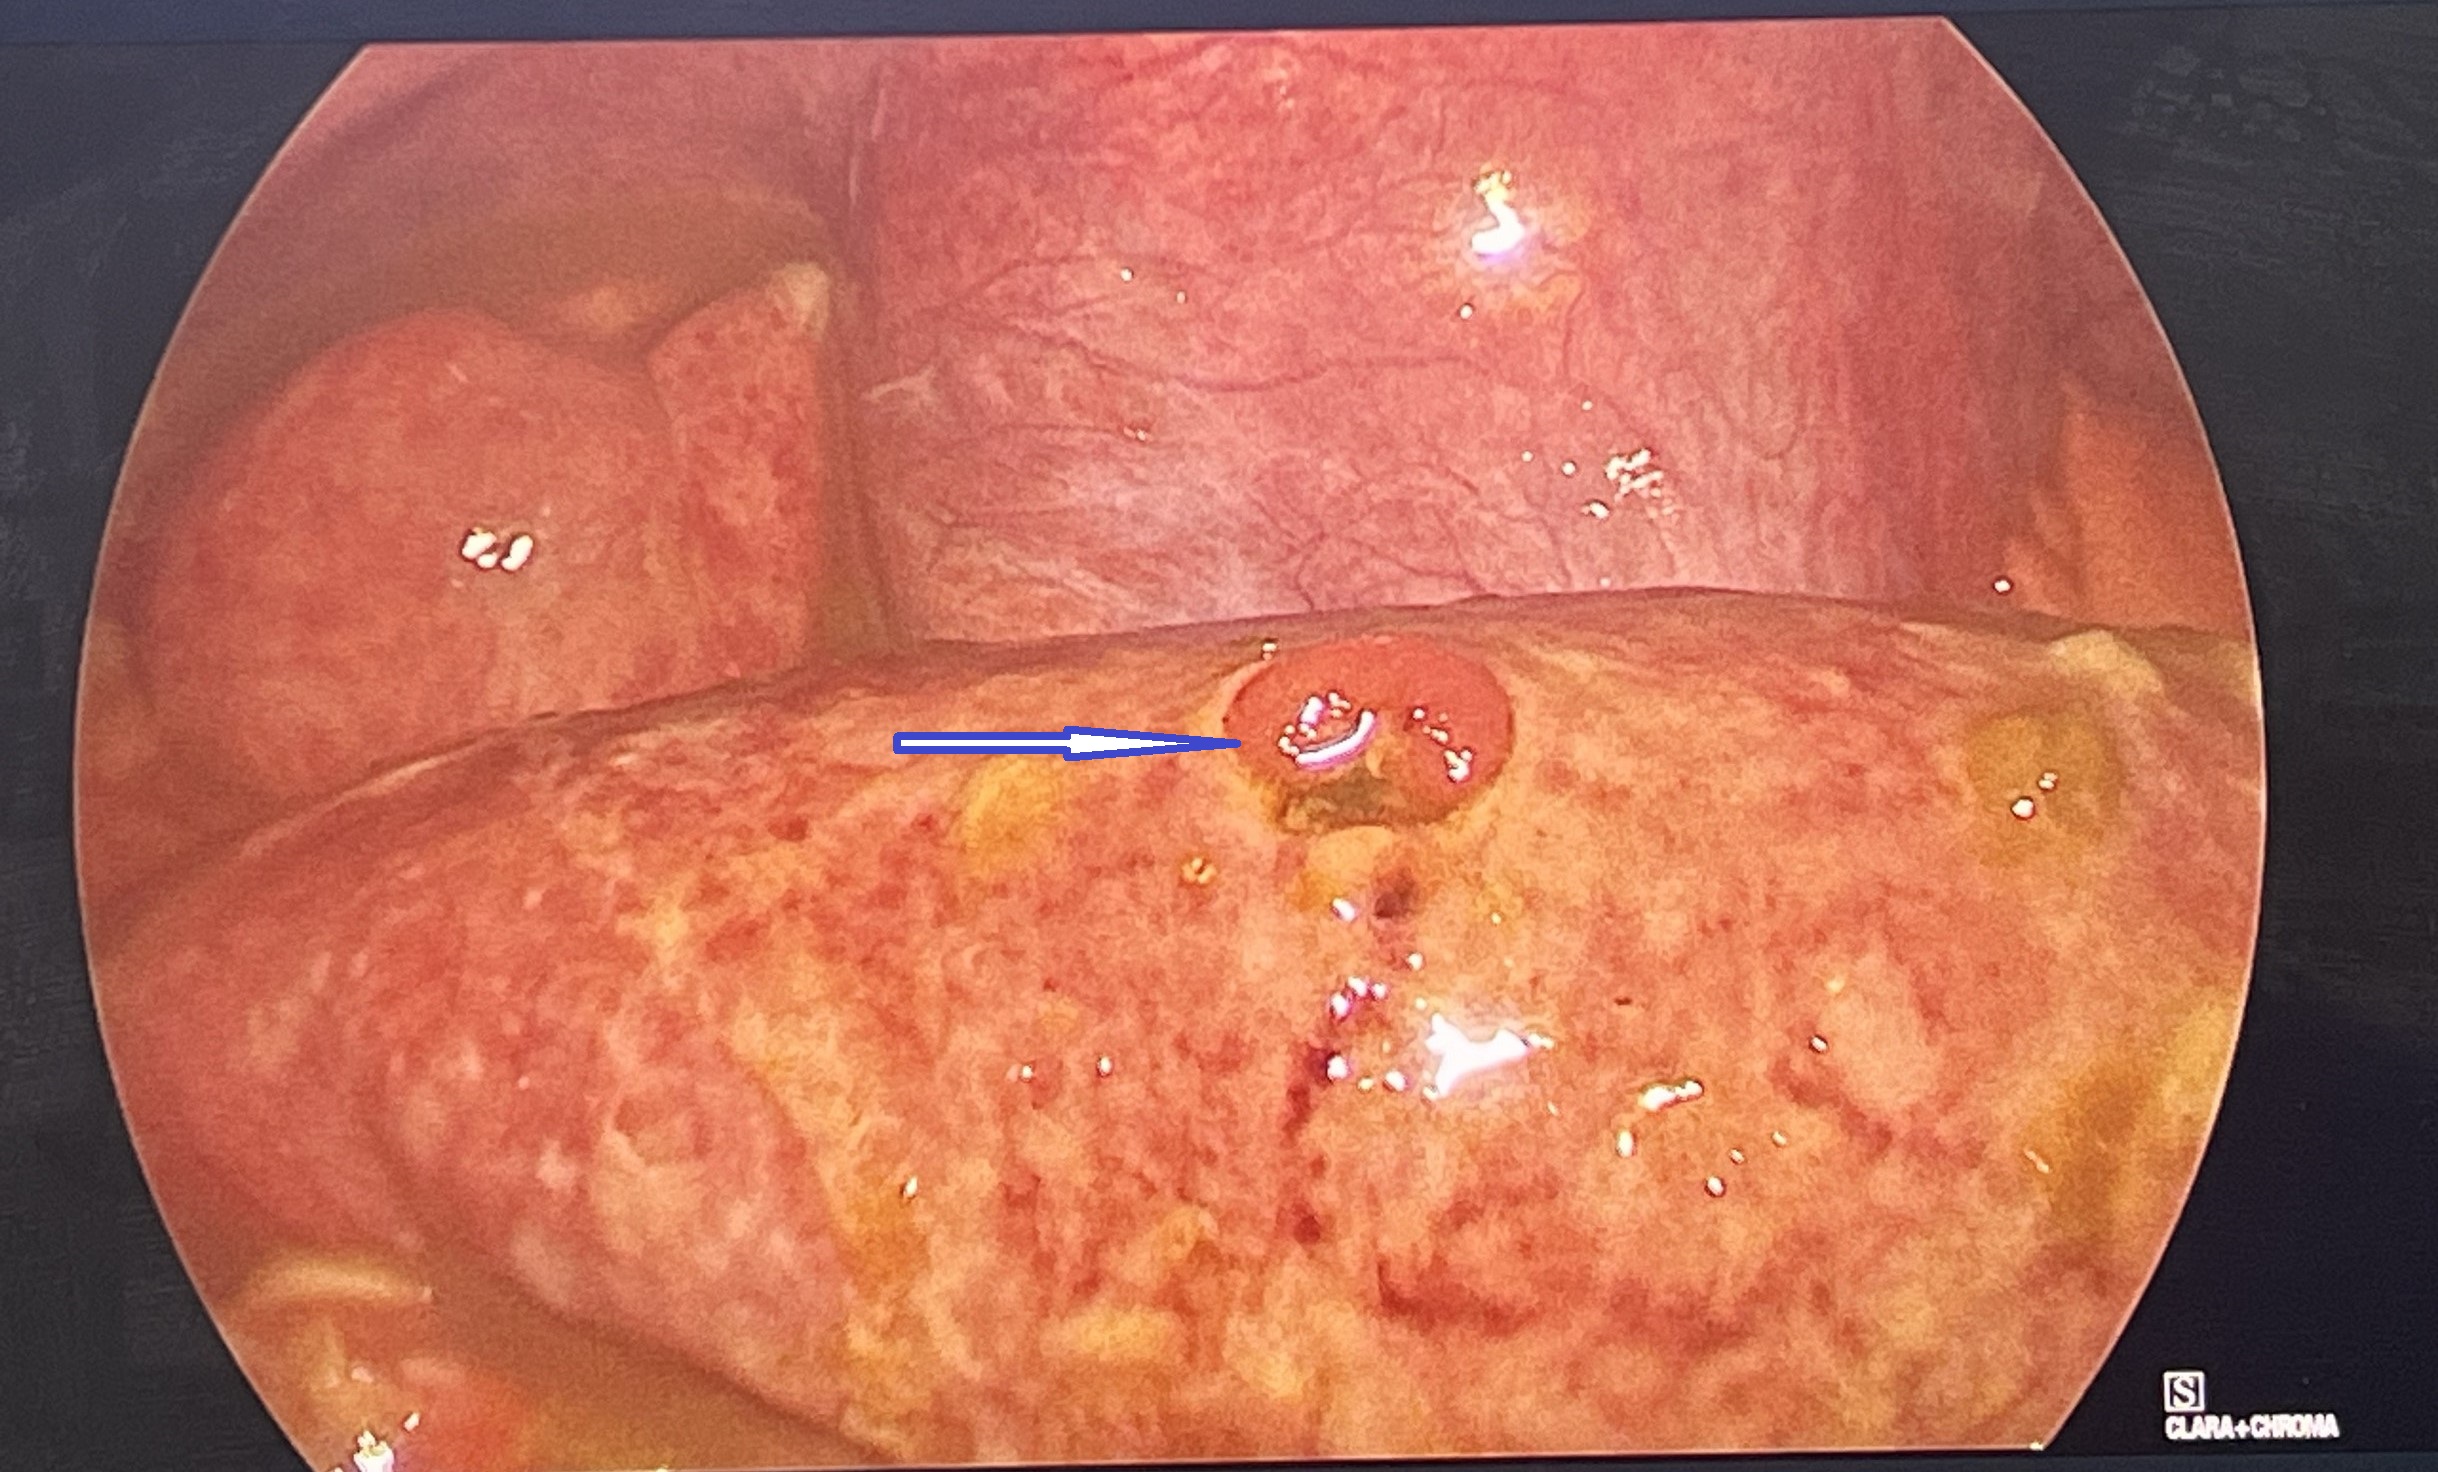 Hình ảnh nội soi trước phẫu thuật: ruột non vỡ